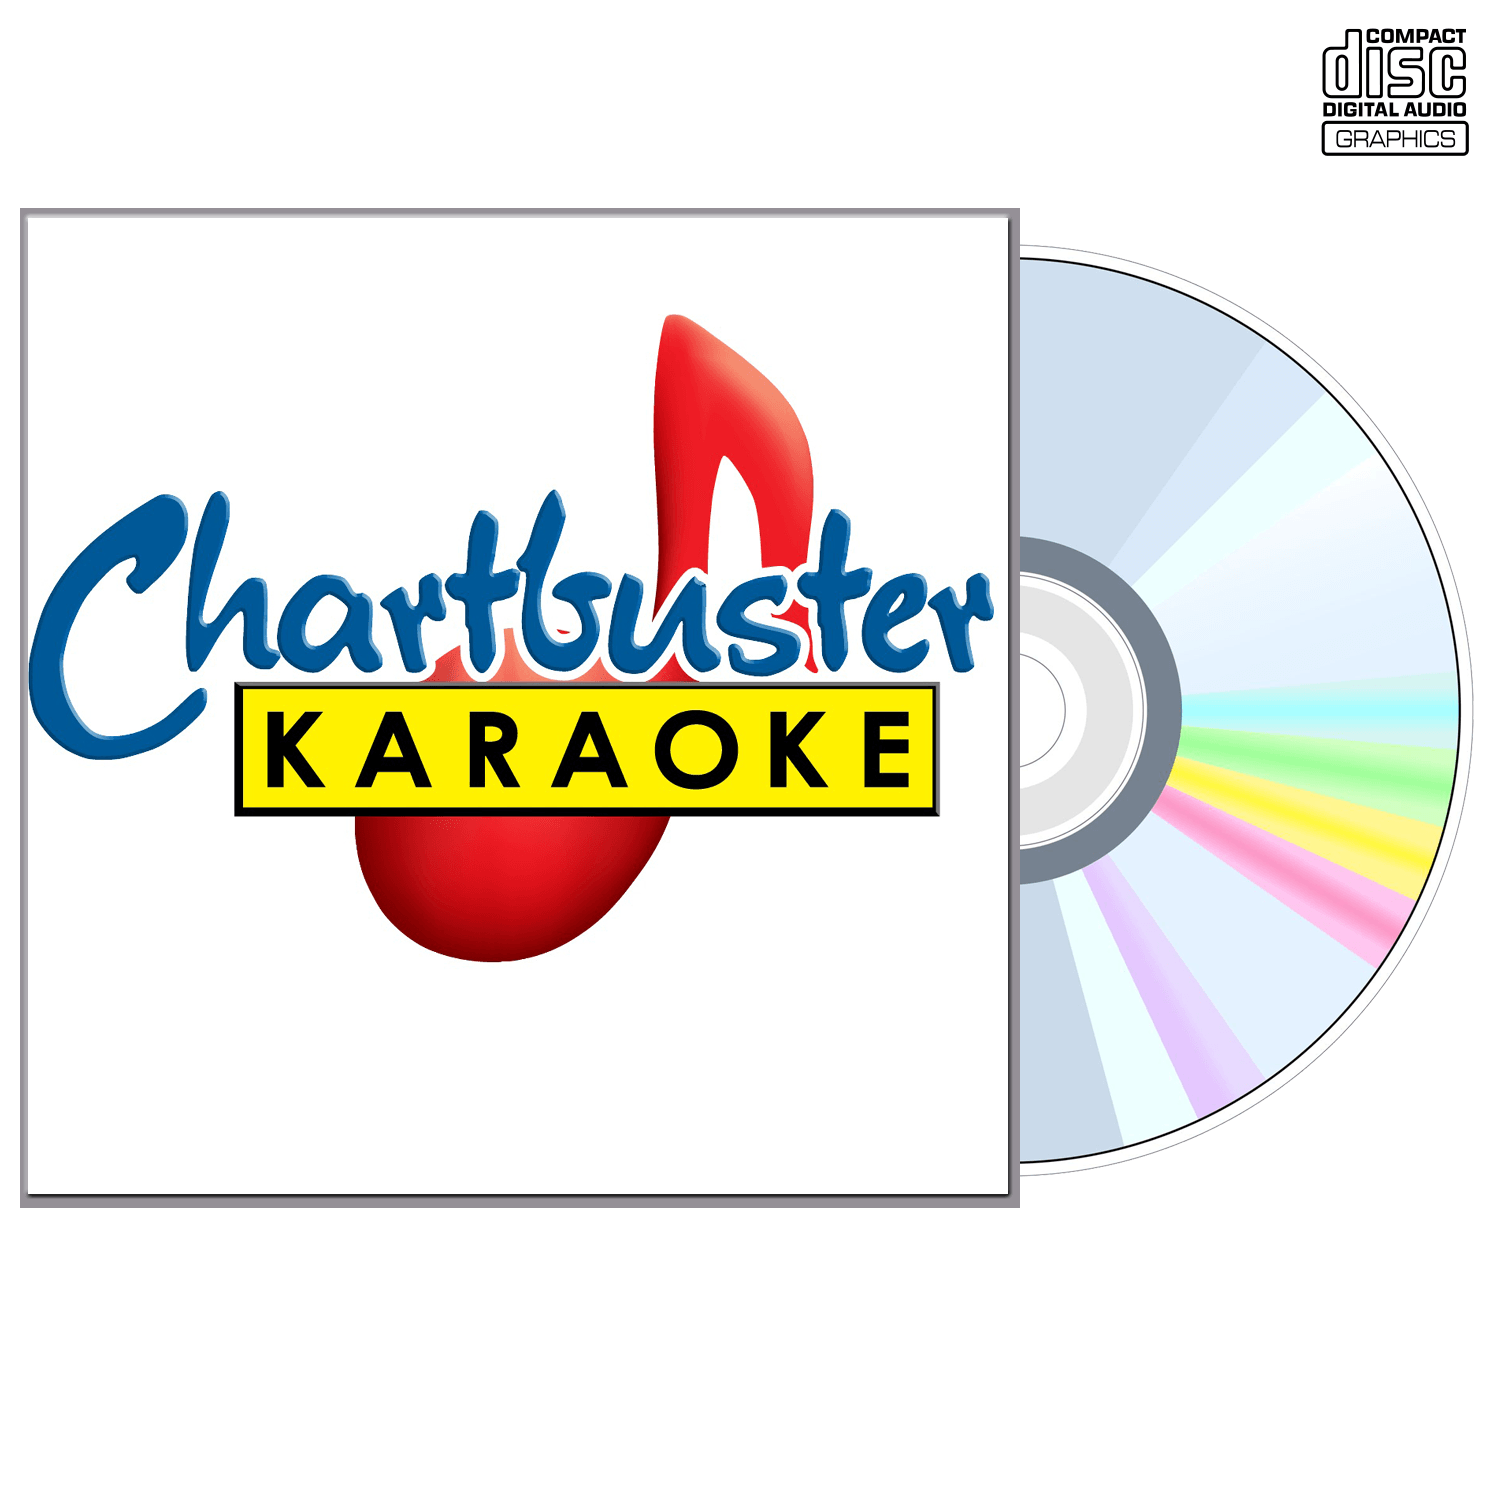 Jojo - CD+G - Chartbuster Karaoke - Karaoke Home Entertainment